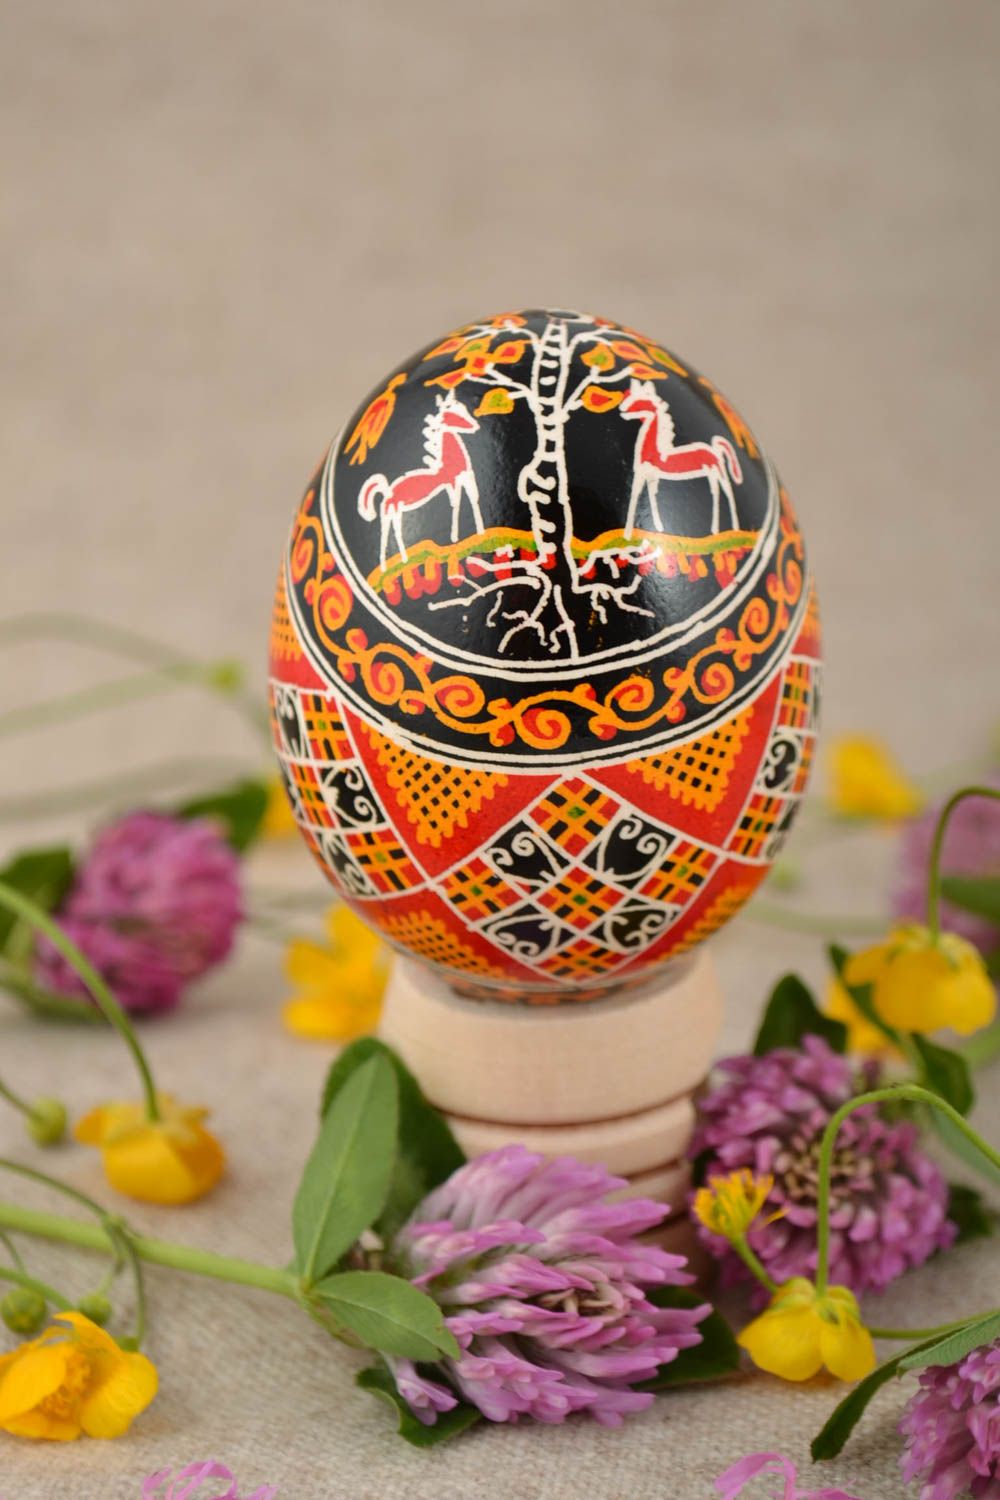 Расписное яйцо куриное со славянской символикой красивое небольшое ручная работа фото 1